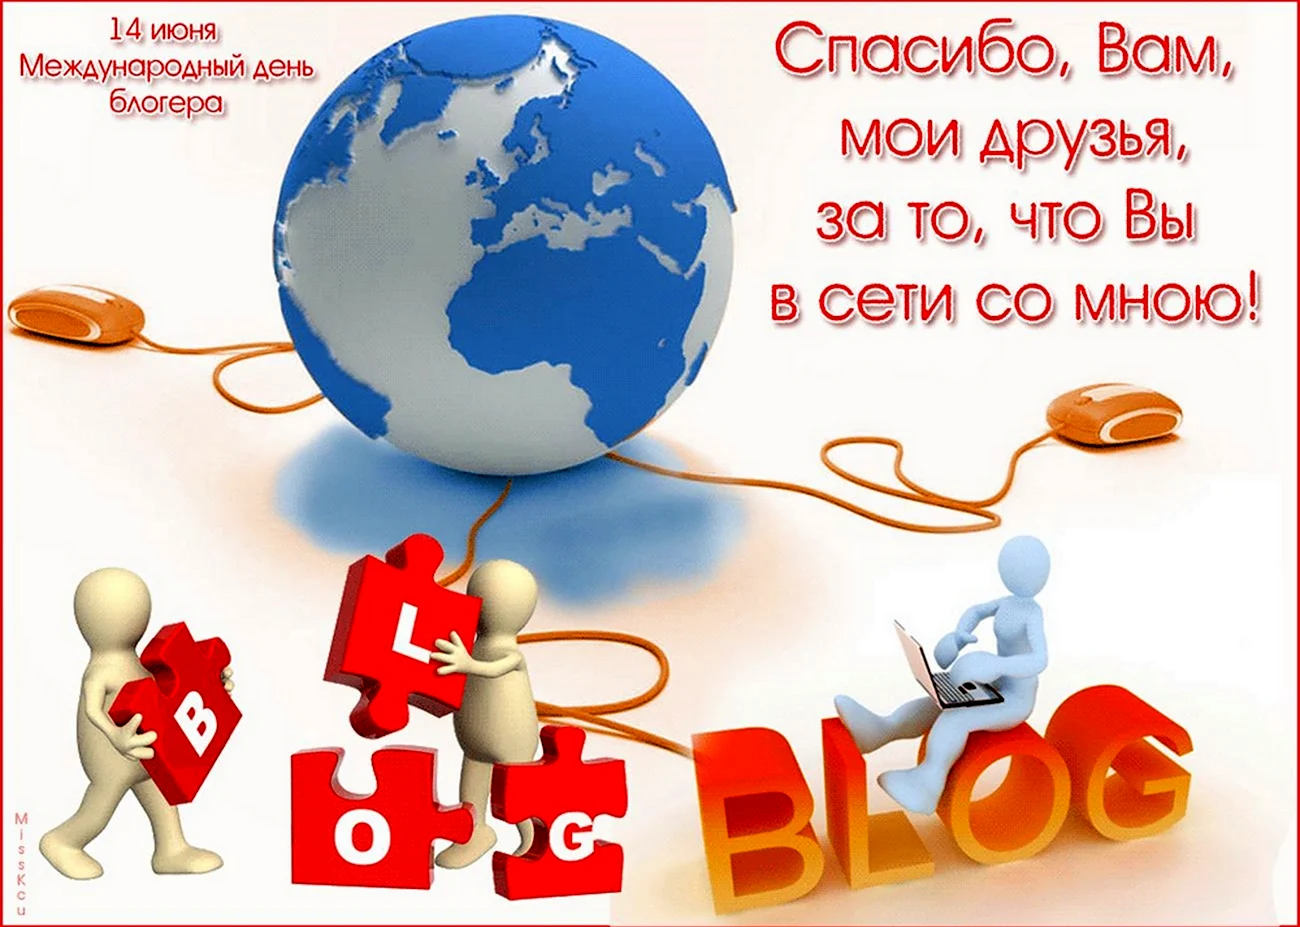 Международный день Блоггера. Поздравление